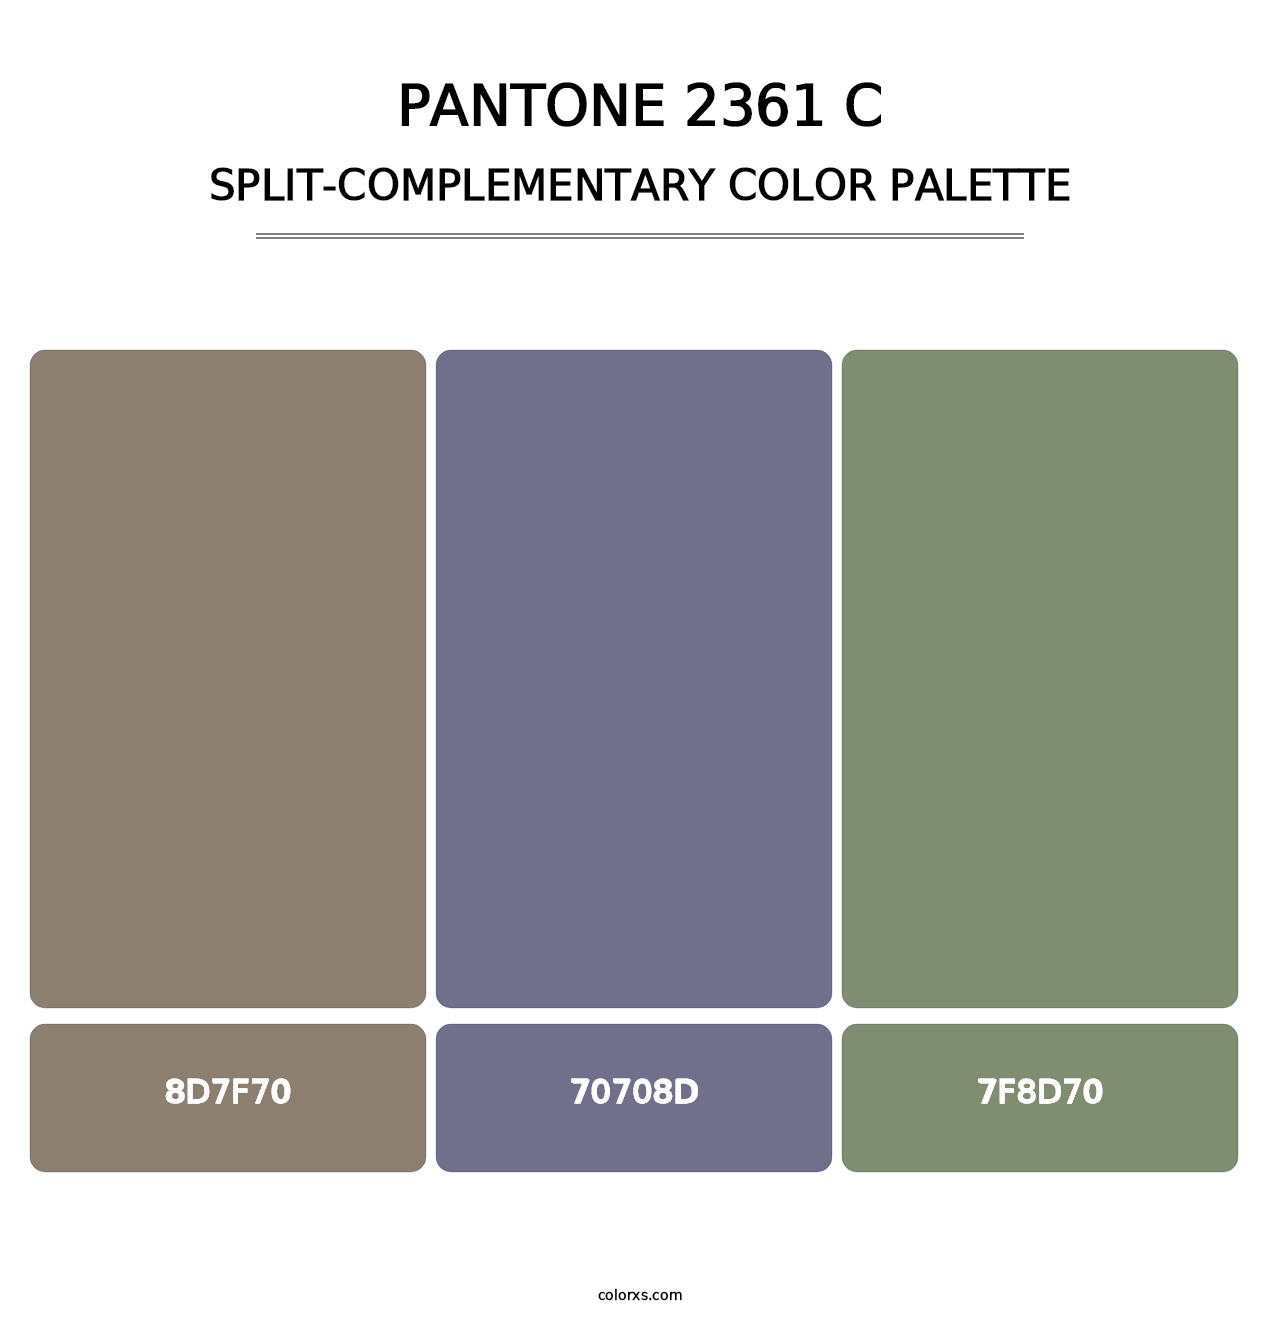 PANTONE 2361 C - Split-Complementary Color Palette